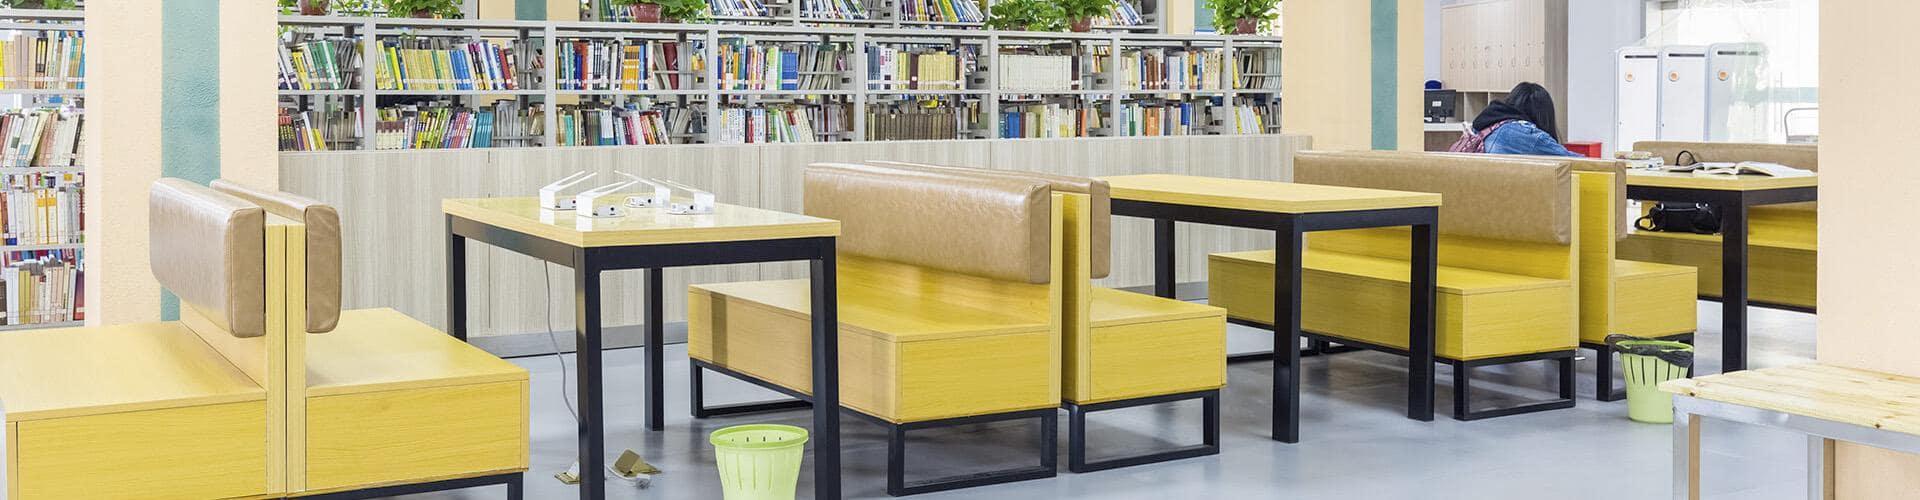 Momento Sector Público - Biblioteca con mesas y sillas - Rural Kutxa